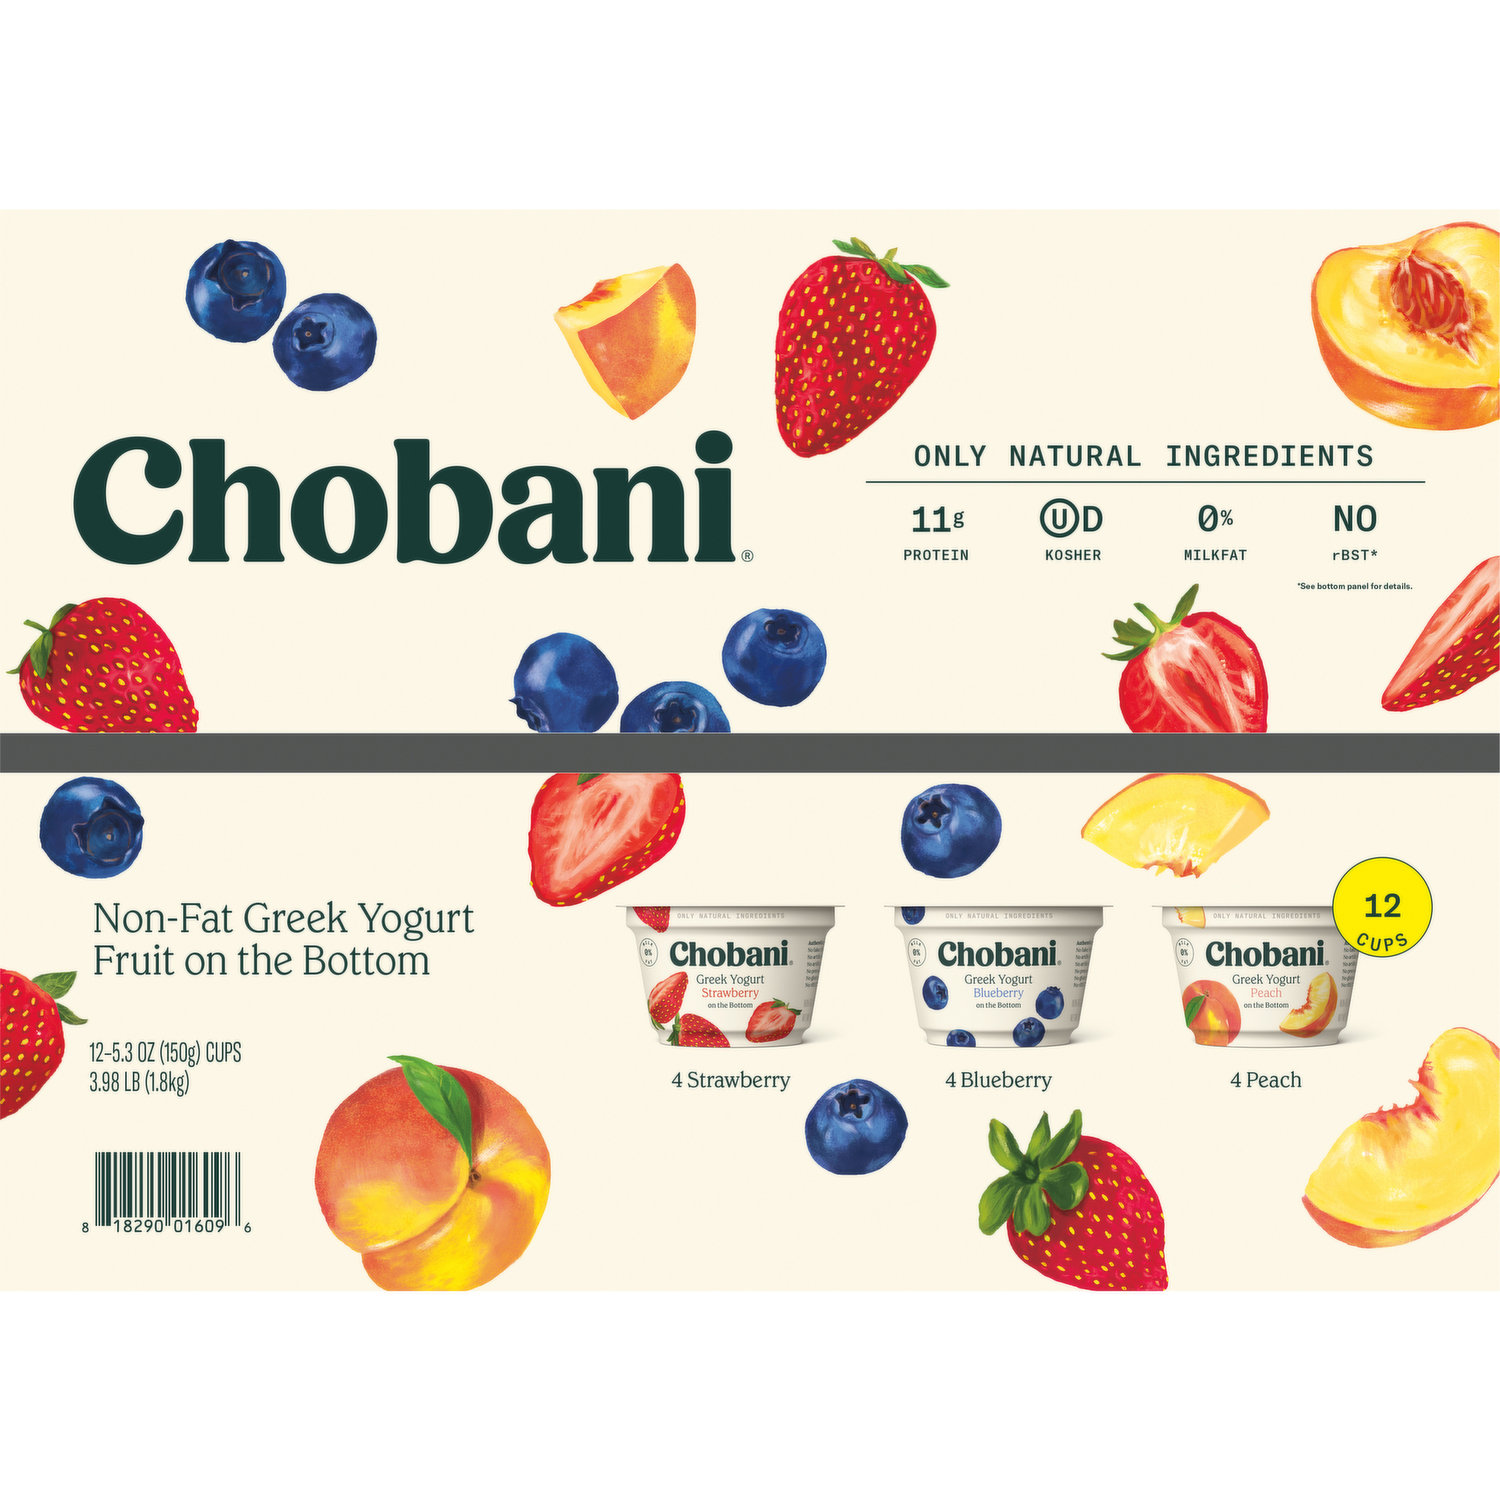 Chobani Blueberry on the Bottom Nonfat Greek Yogurt - 5.3oz